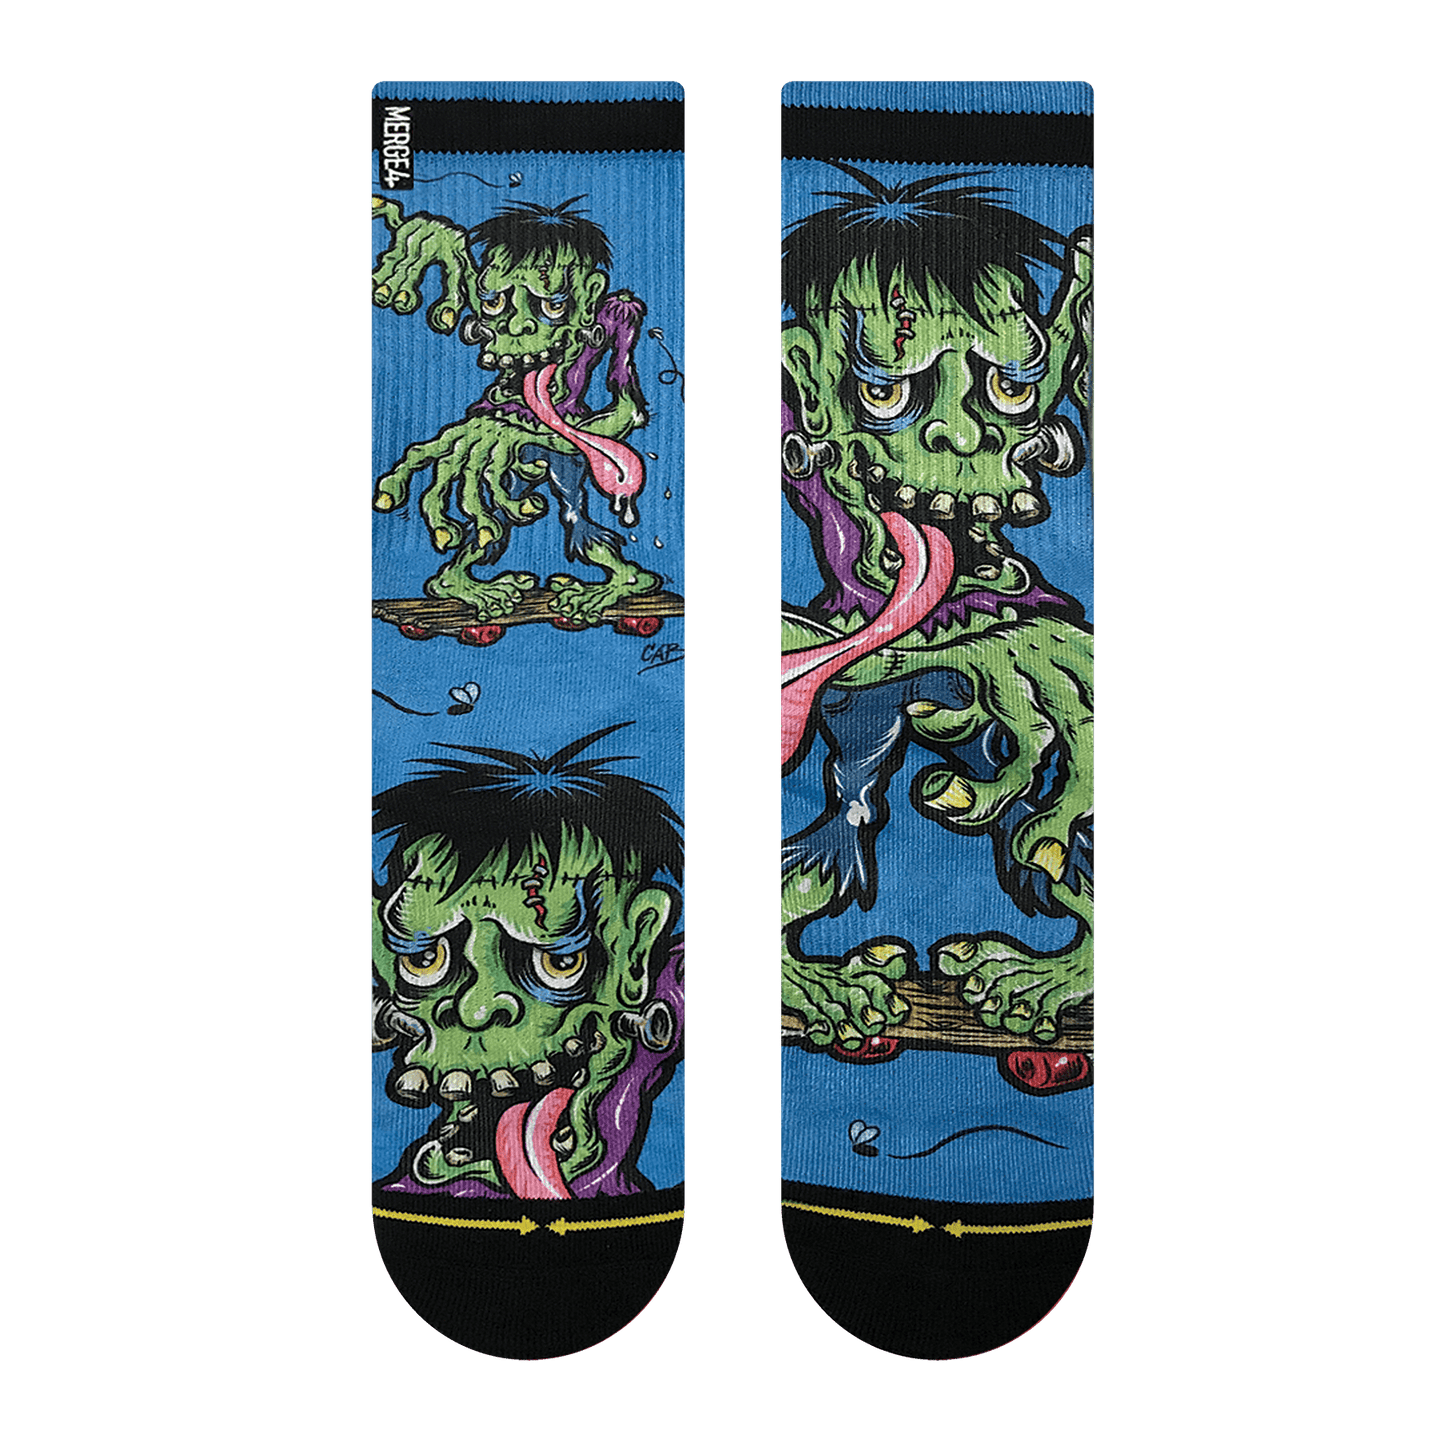 Merge 4 - Steve Caballero Frankenskate Socks